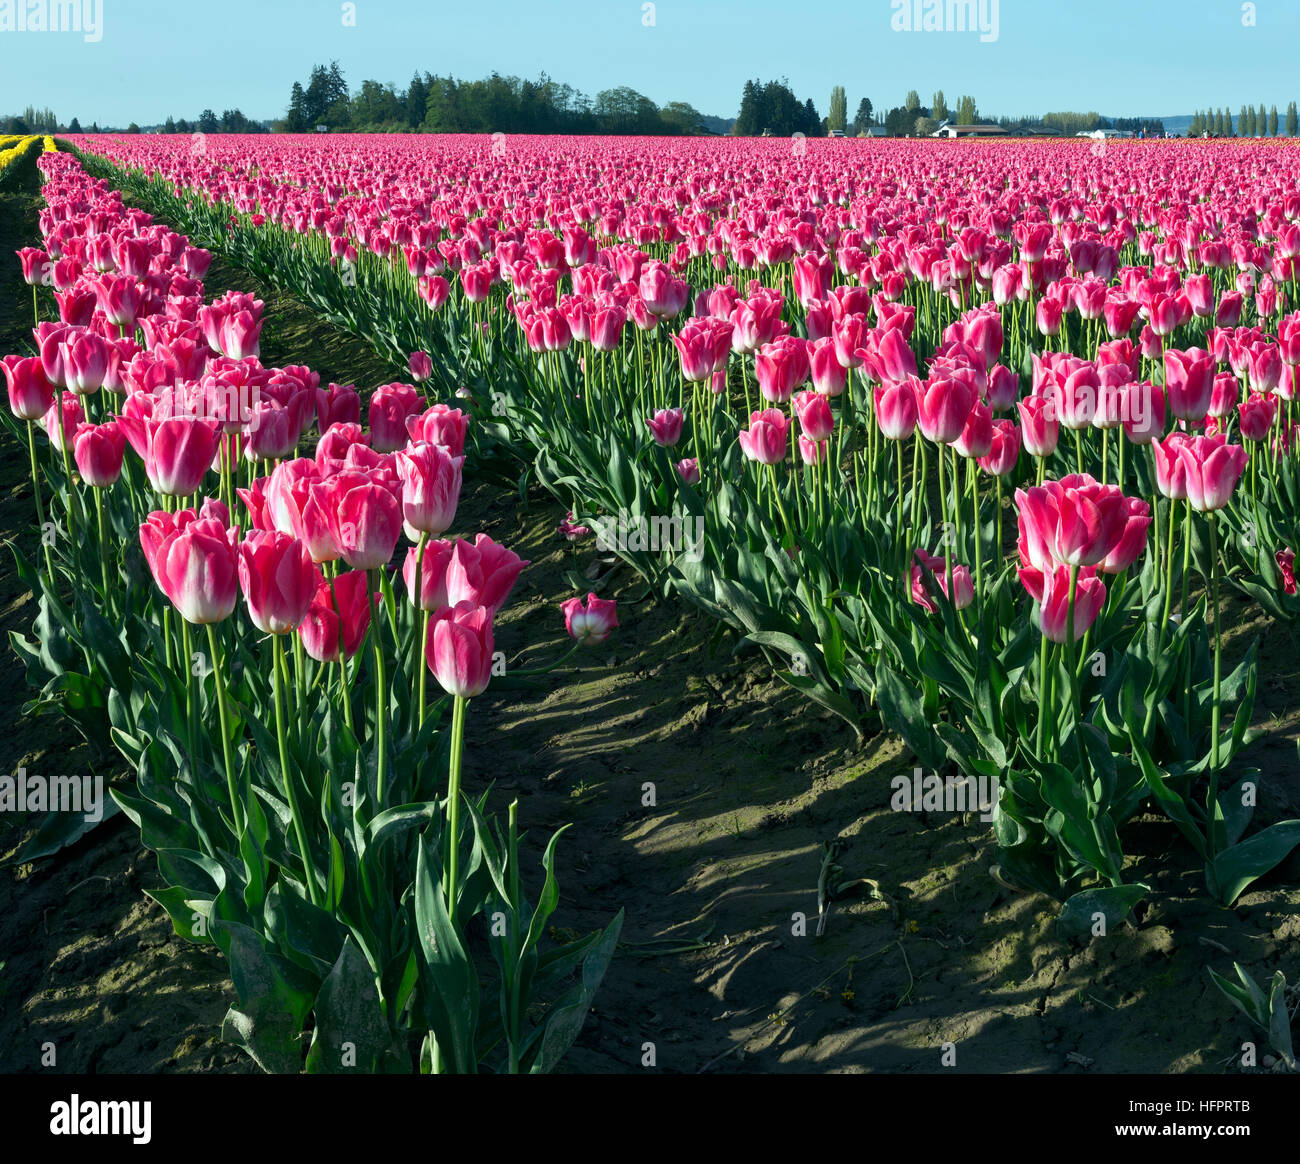 WA13054-00...WASHINGTON - des tulipes roses poussant dans un champ dans l'ampoule commercial du delta de la rivière Skagit, près de Mount Vernon. Banque D'Images